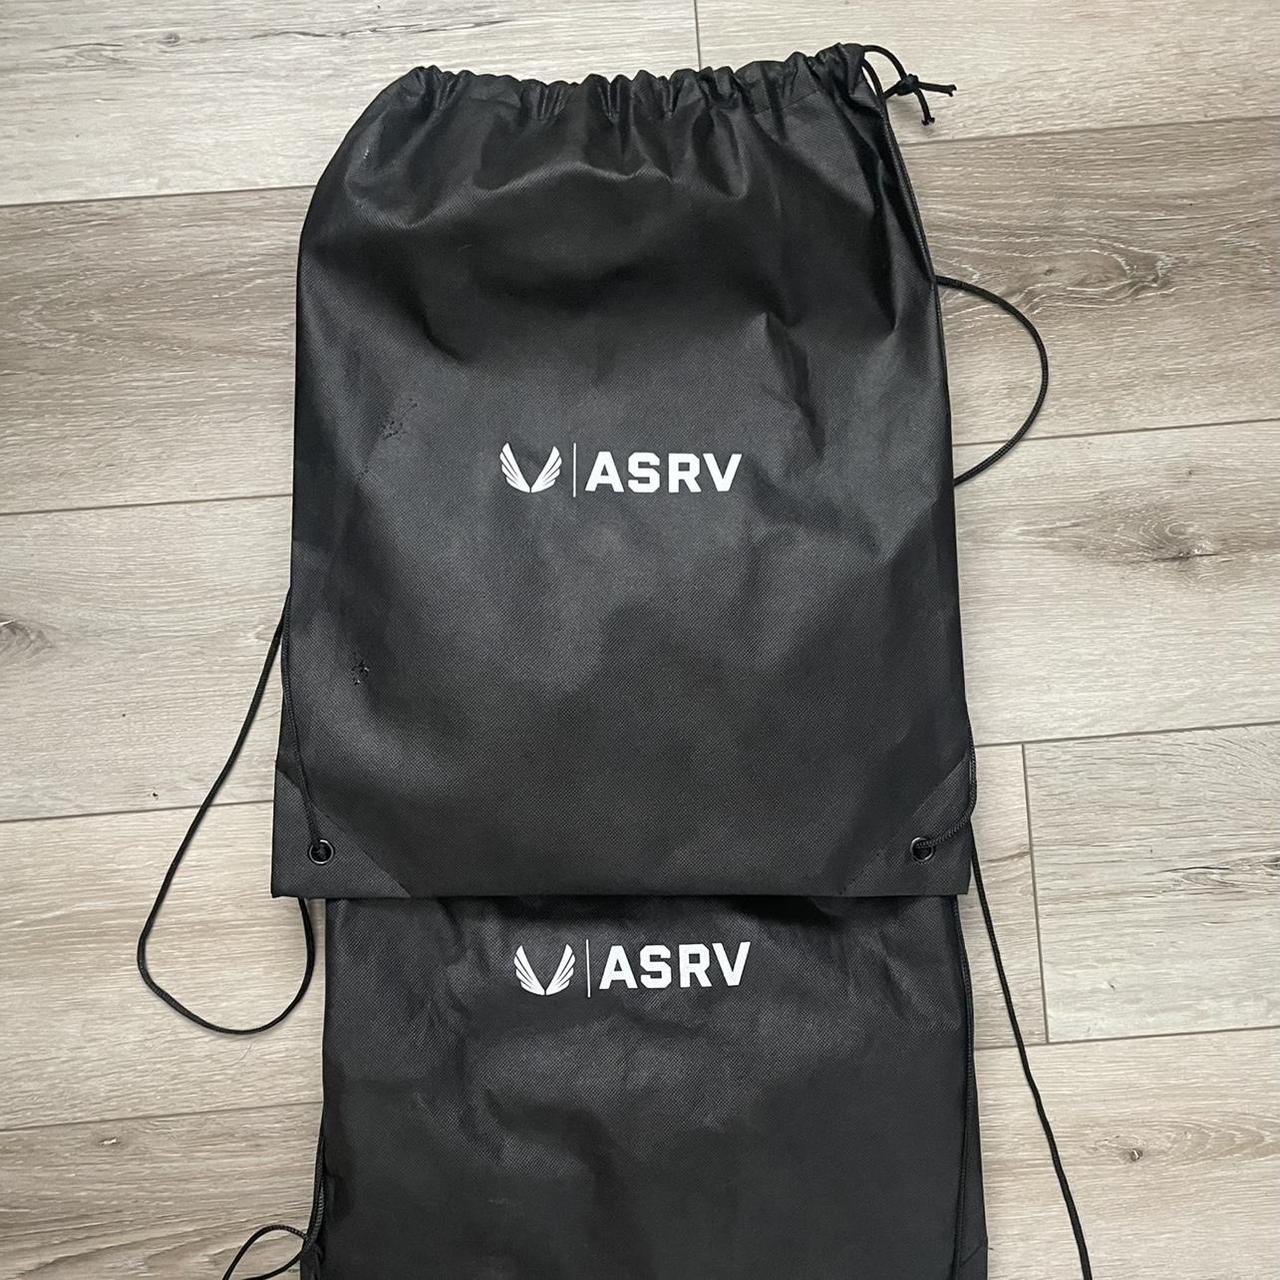 2 ASRV drawstring bags, 1 unused 1 very lightly used. - Depop